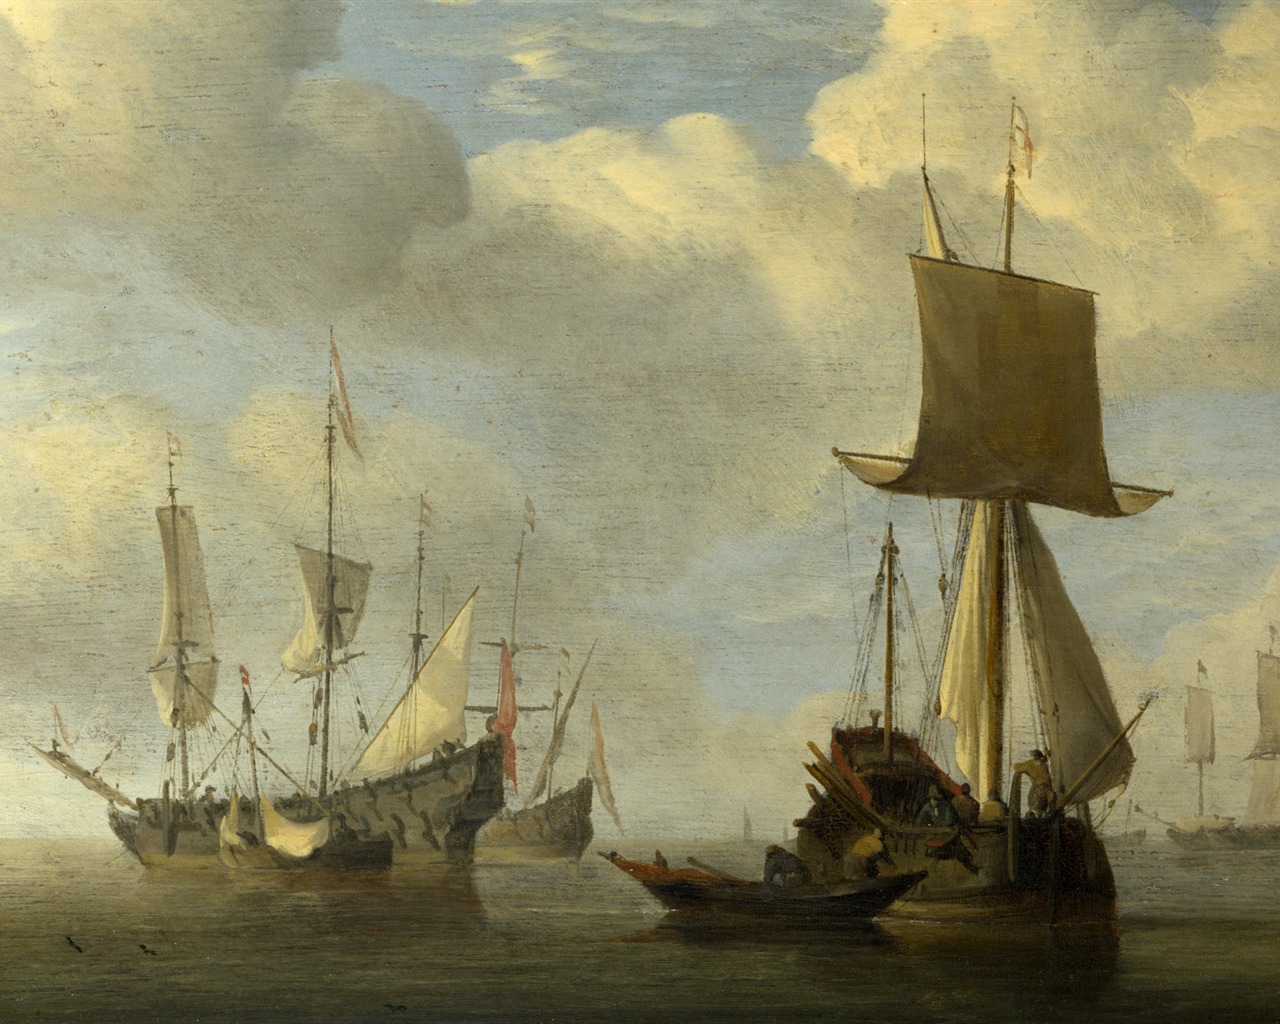 伦敦画廊帆船 壁纸(二)5 - 1280x1024